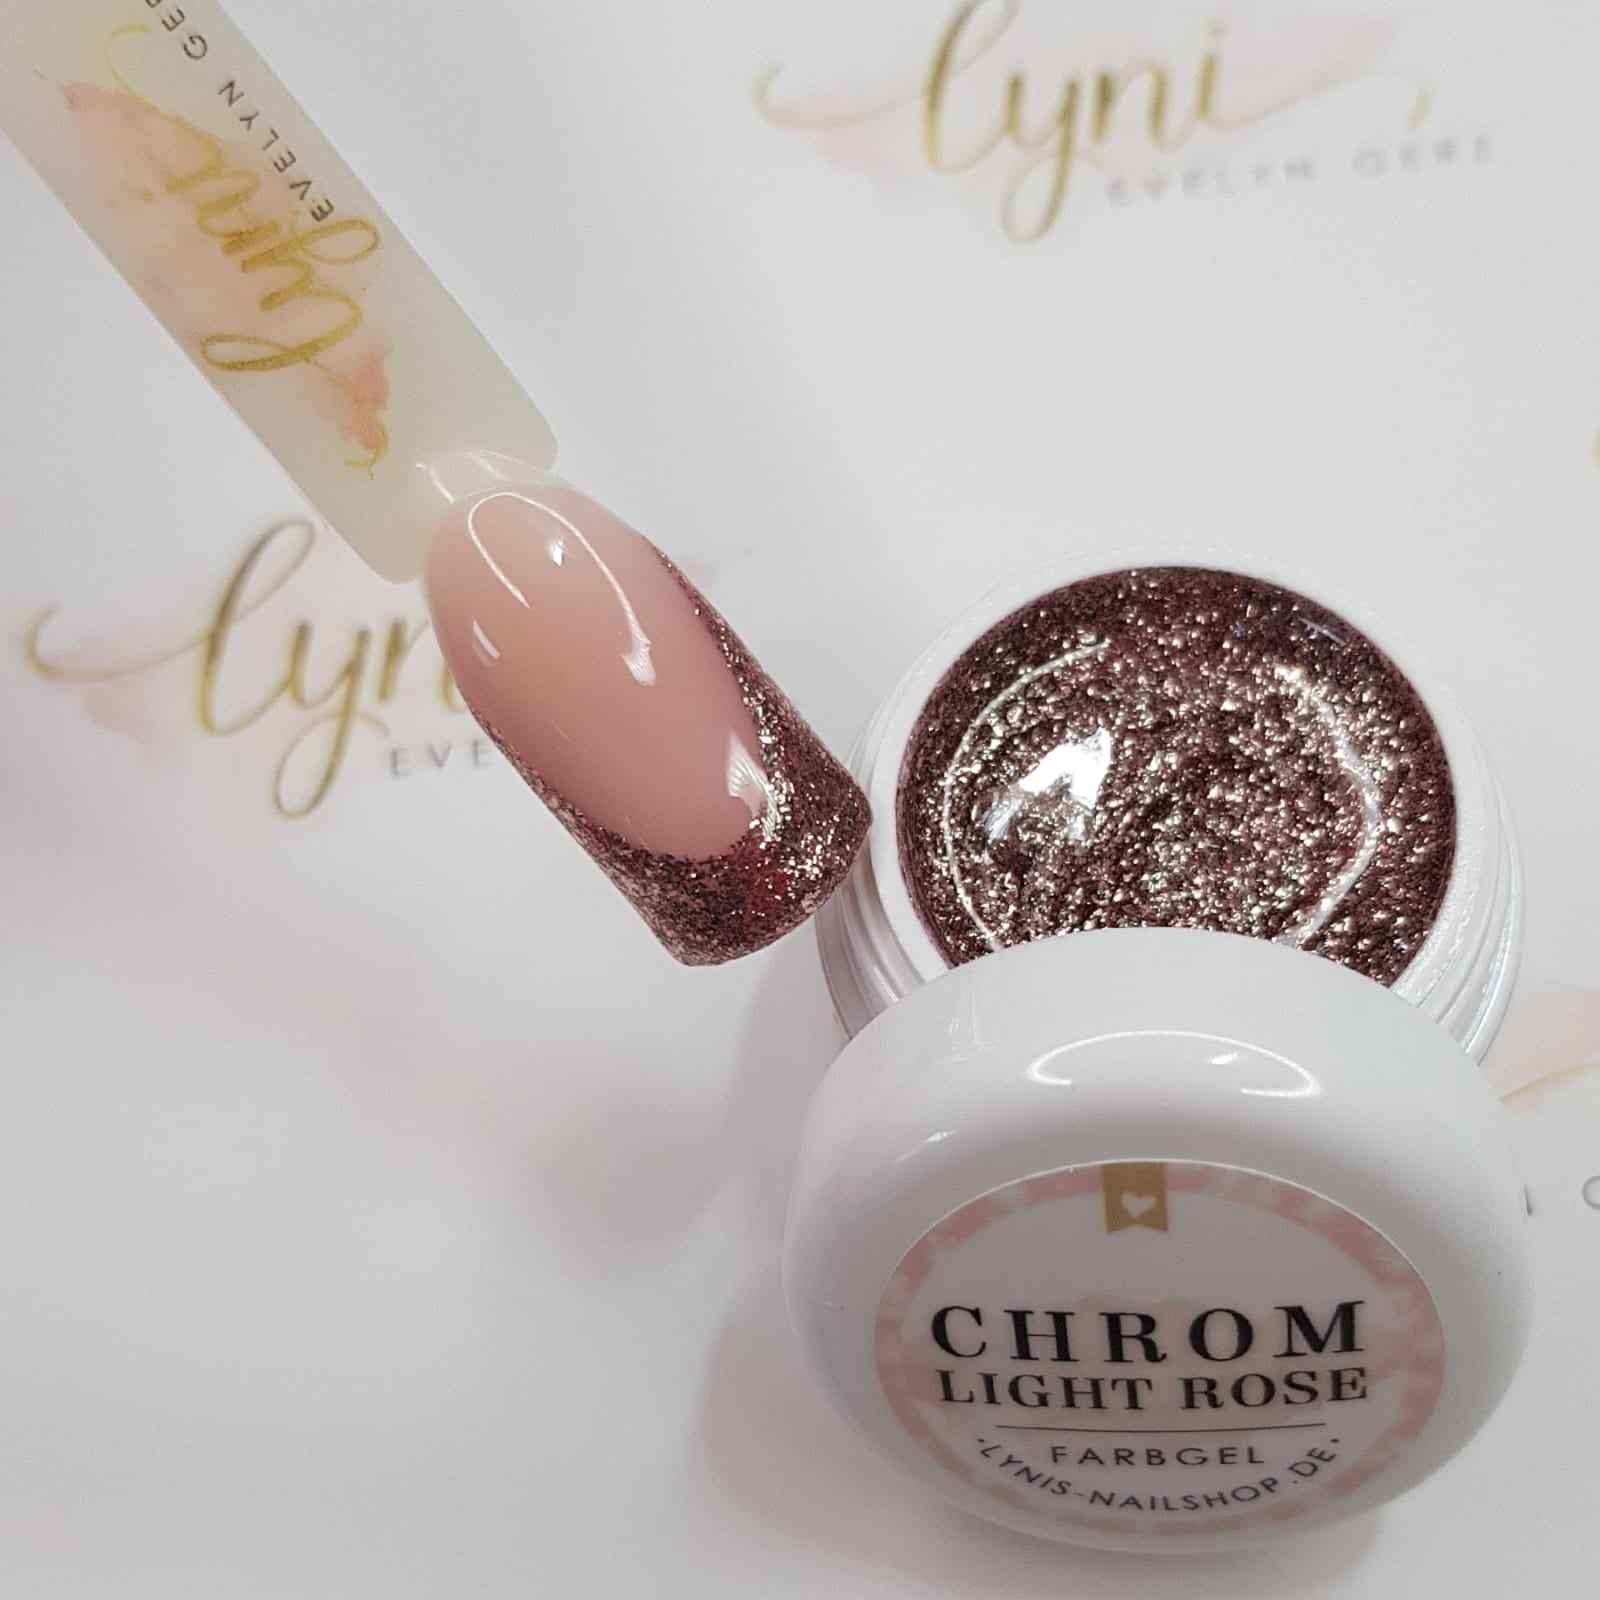 Chrom Light Rose · Farbgel 5ml*